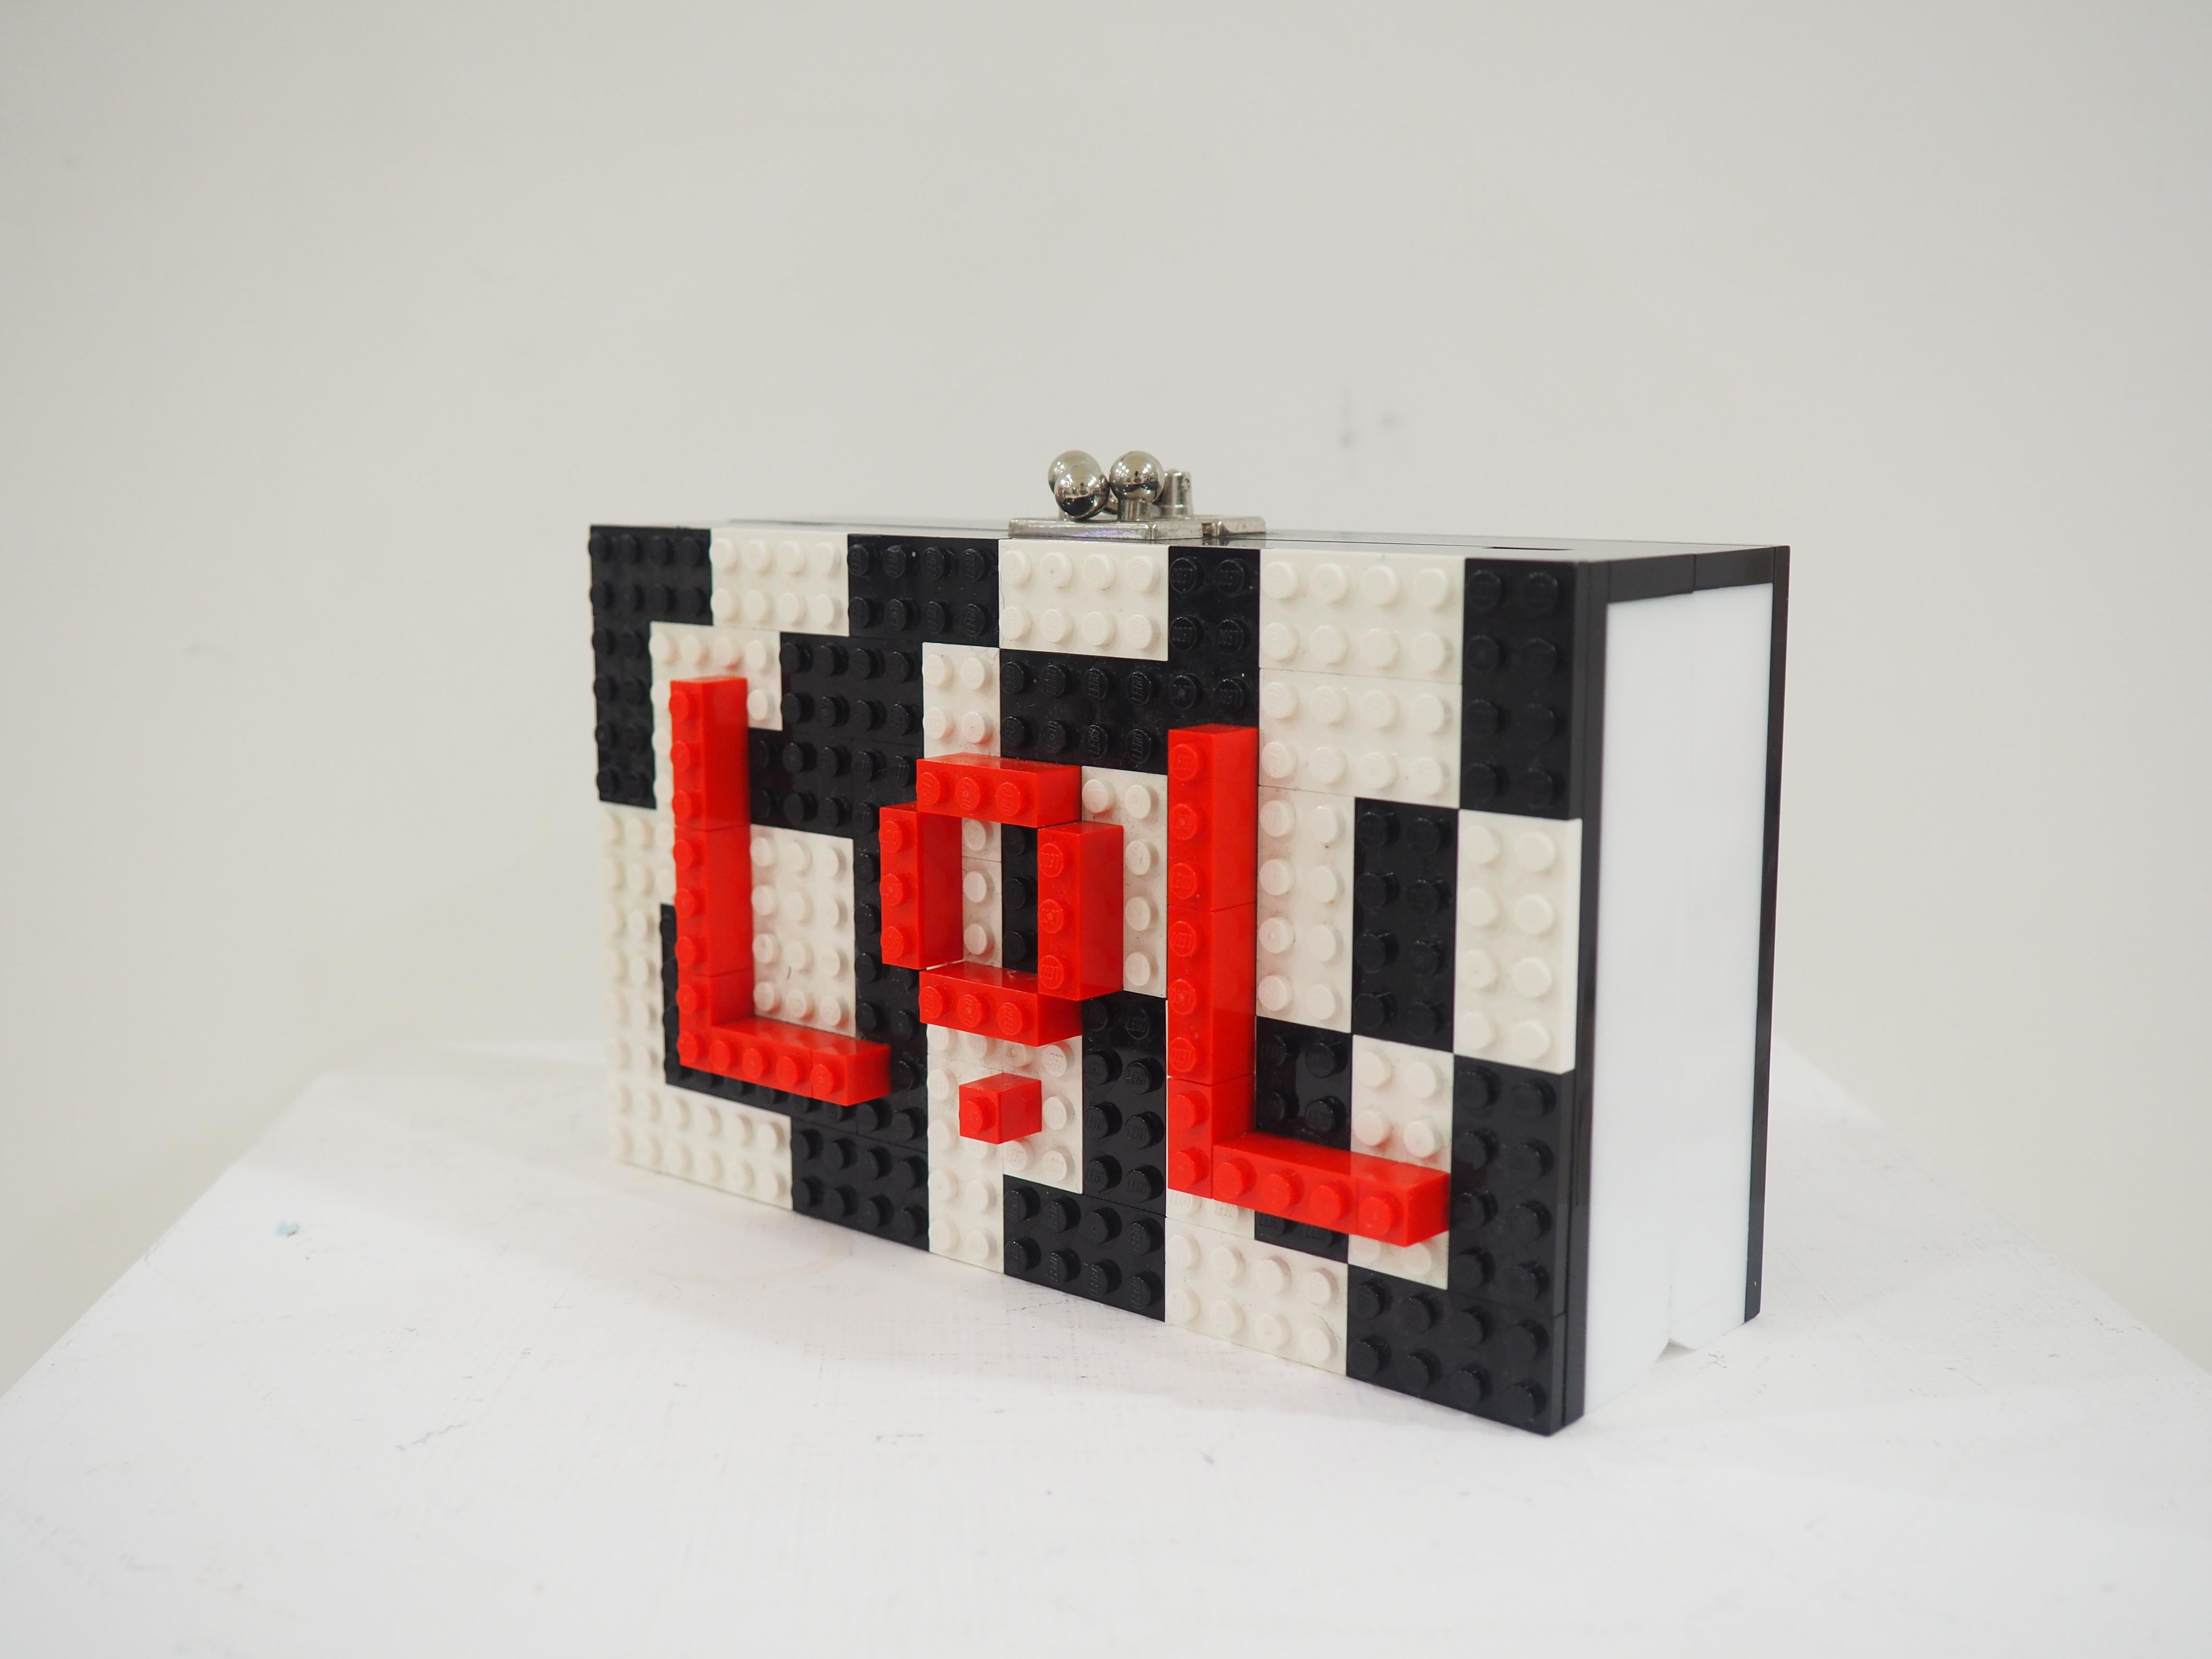 Lego Lol bag
shoulder or handle bag
in the inside leather
